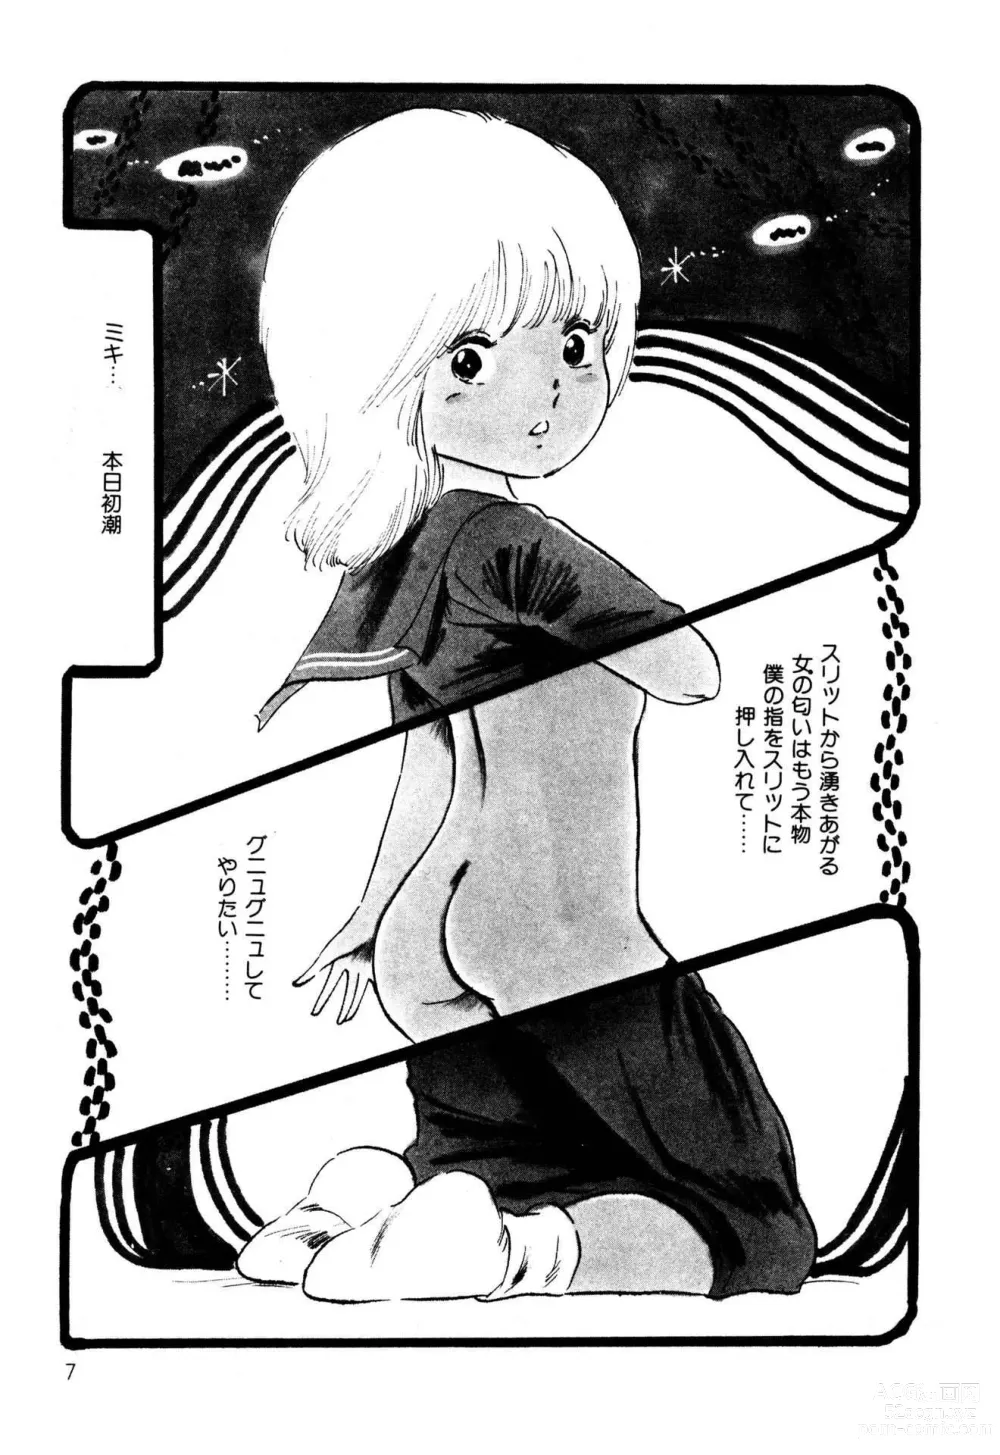 Page 7 of manga Koisuru Yousei